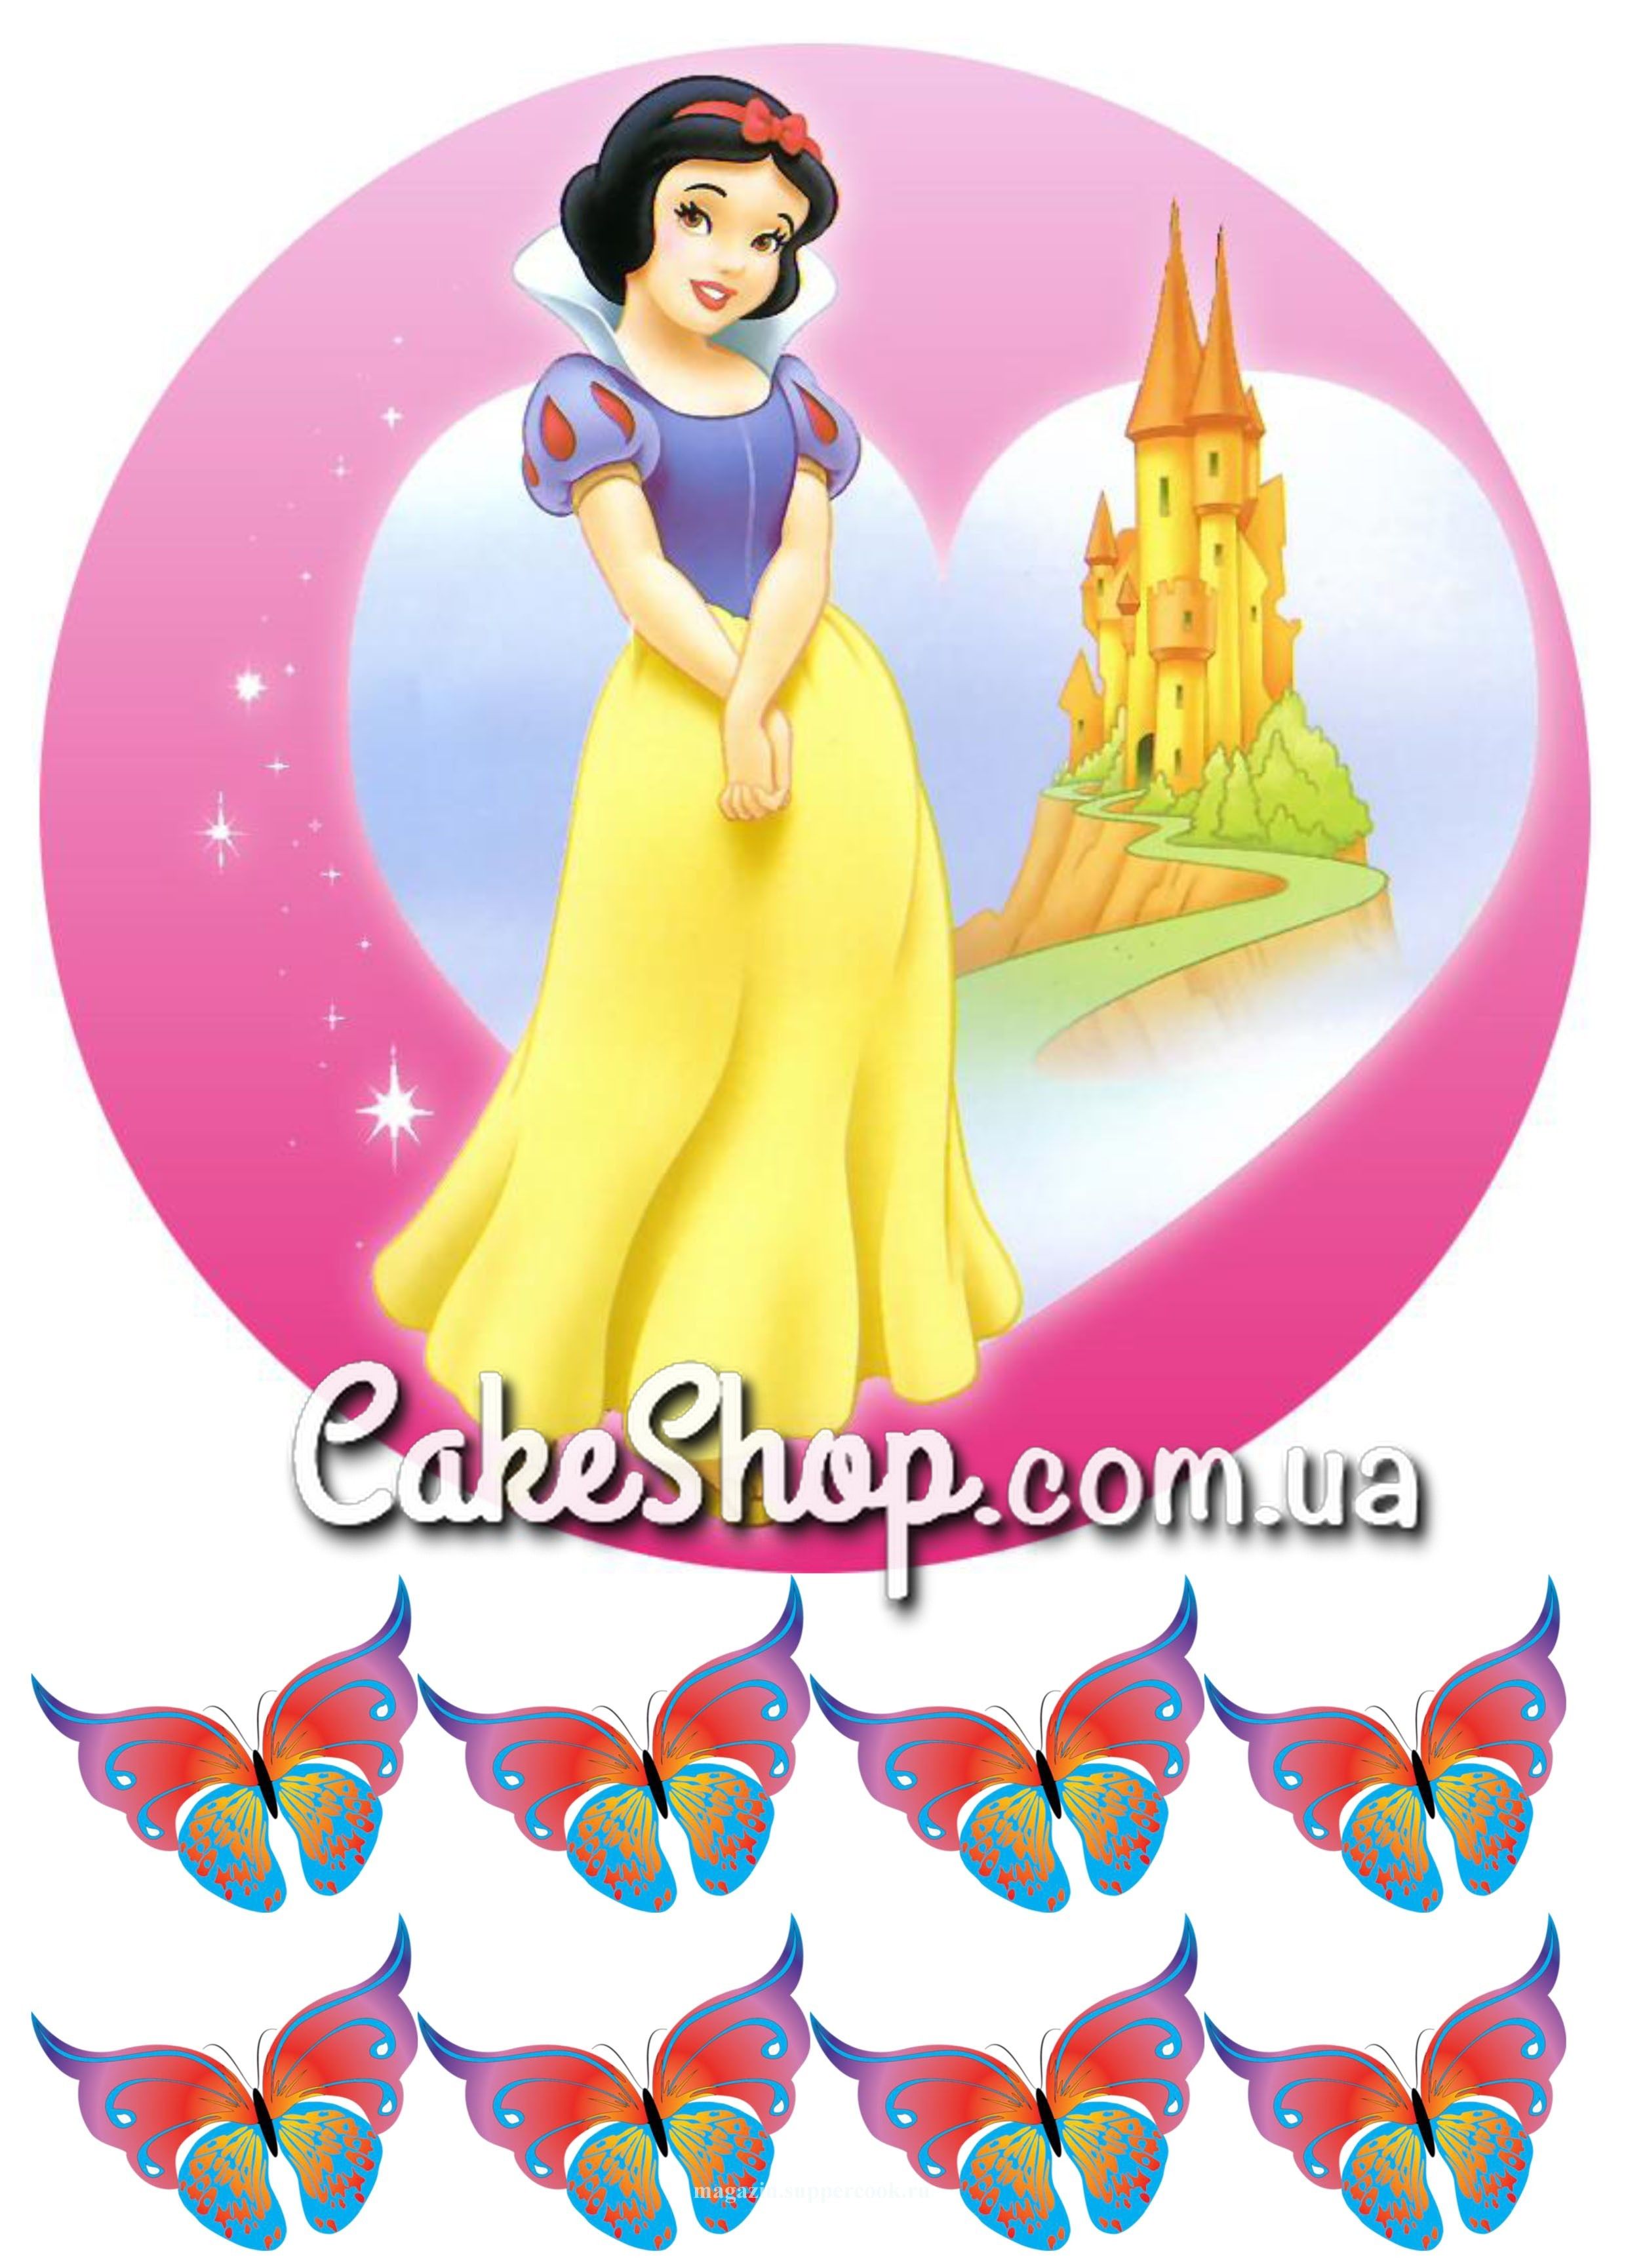 ⋗ Сахарная картинка Принцесса Белоснежка купить в Украине ➛ CakeShop.com.ua, фото